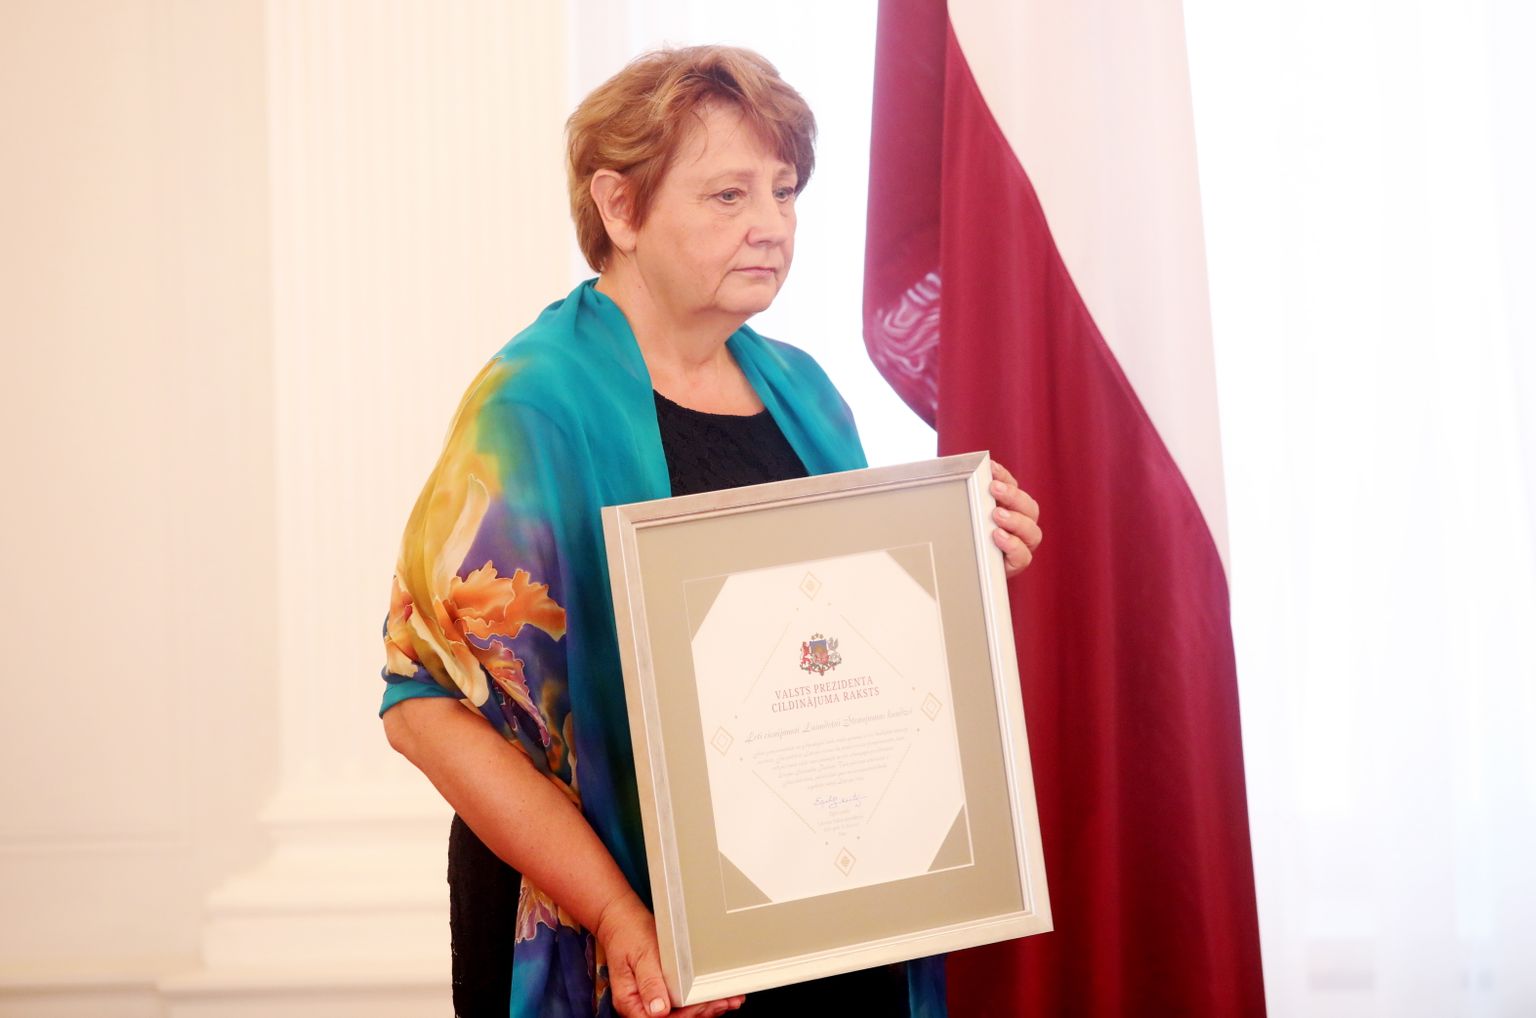 Latvijas Ministru prezidente (2014-2016) Laimdota Straujuma saņemot Valsts prezidenta Cildinājuma rakstu Rīgas pilī.